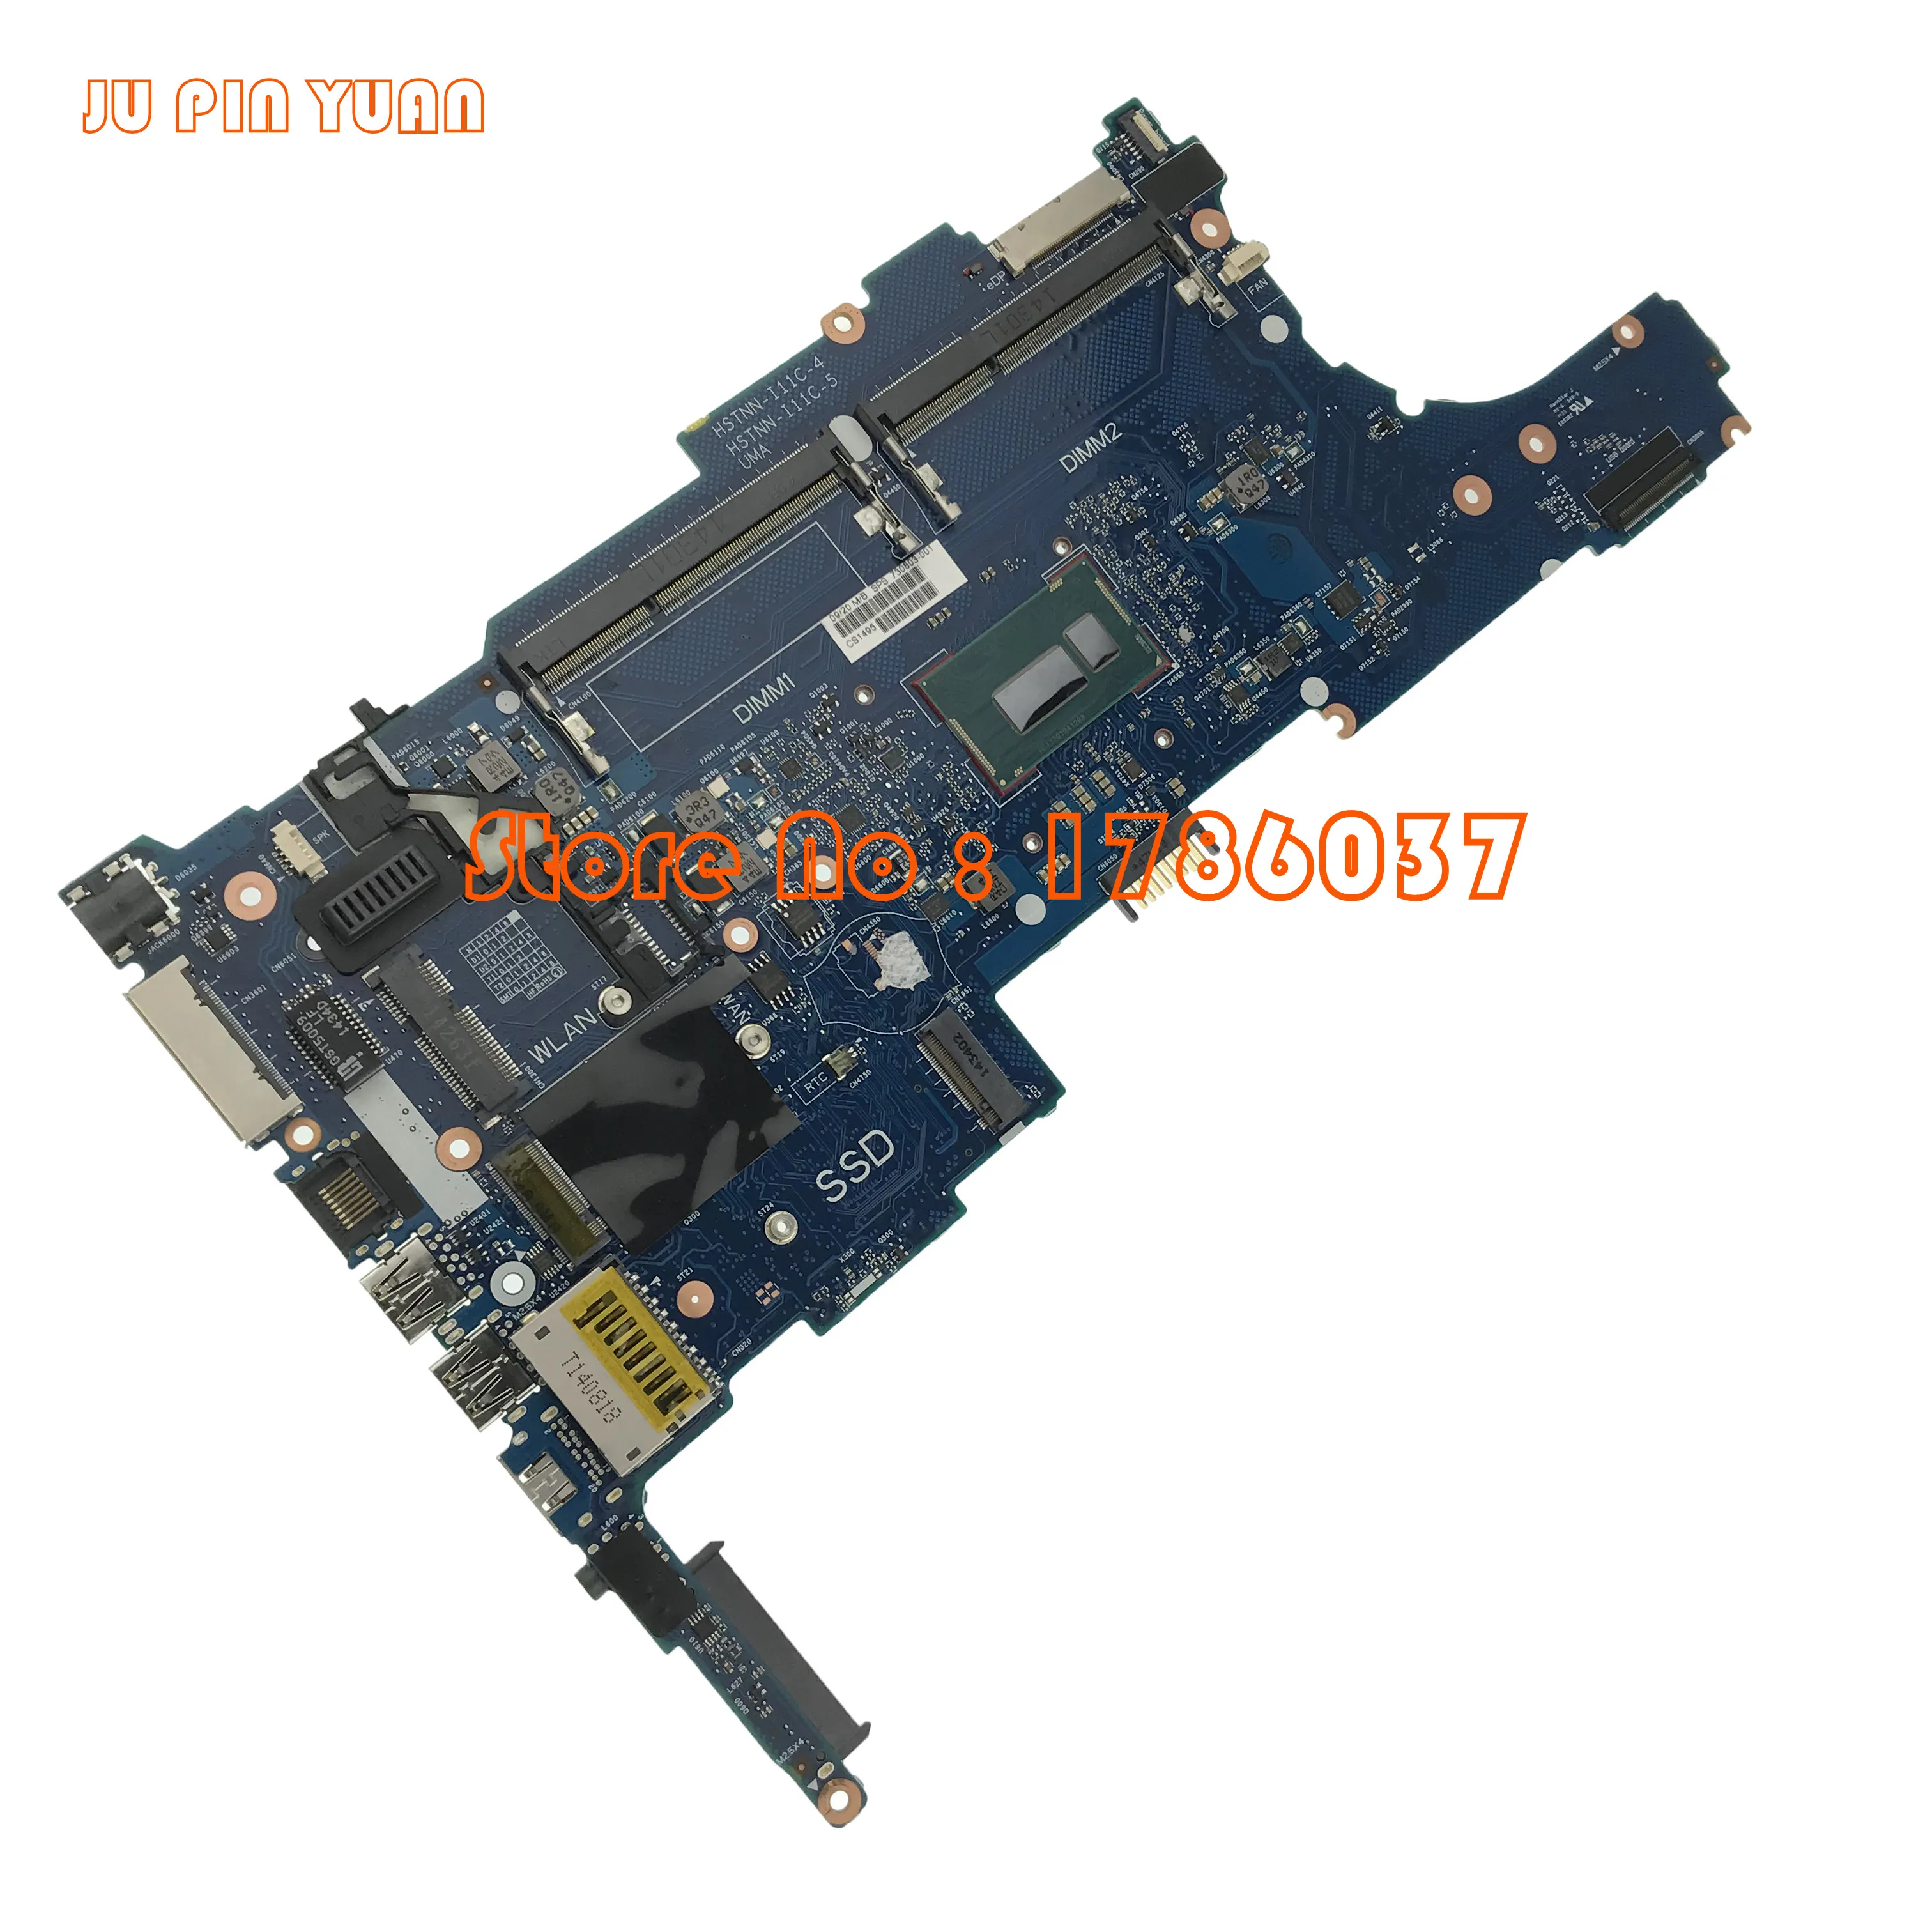 Ju pin yuan 730803-501 730803-001 730803-601 материнская плата для hp EliteBook 840 G1 Материнская плата ноутбука i5-4300U 6050A2560201-MB-A03